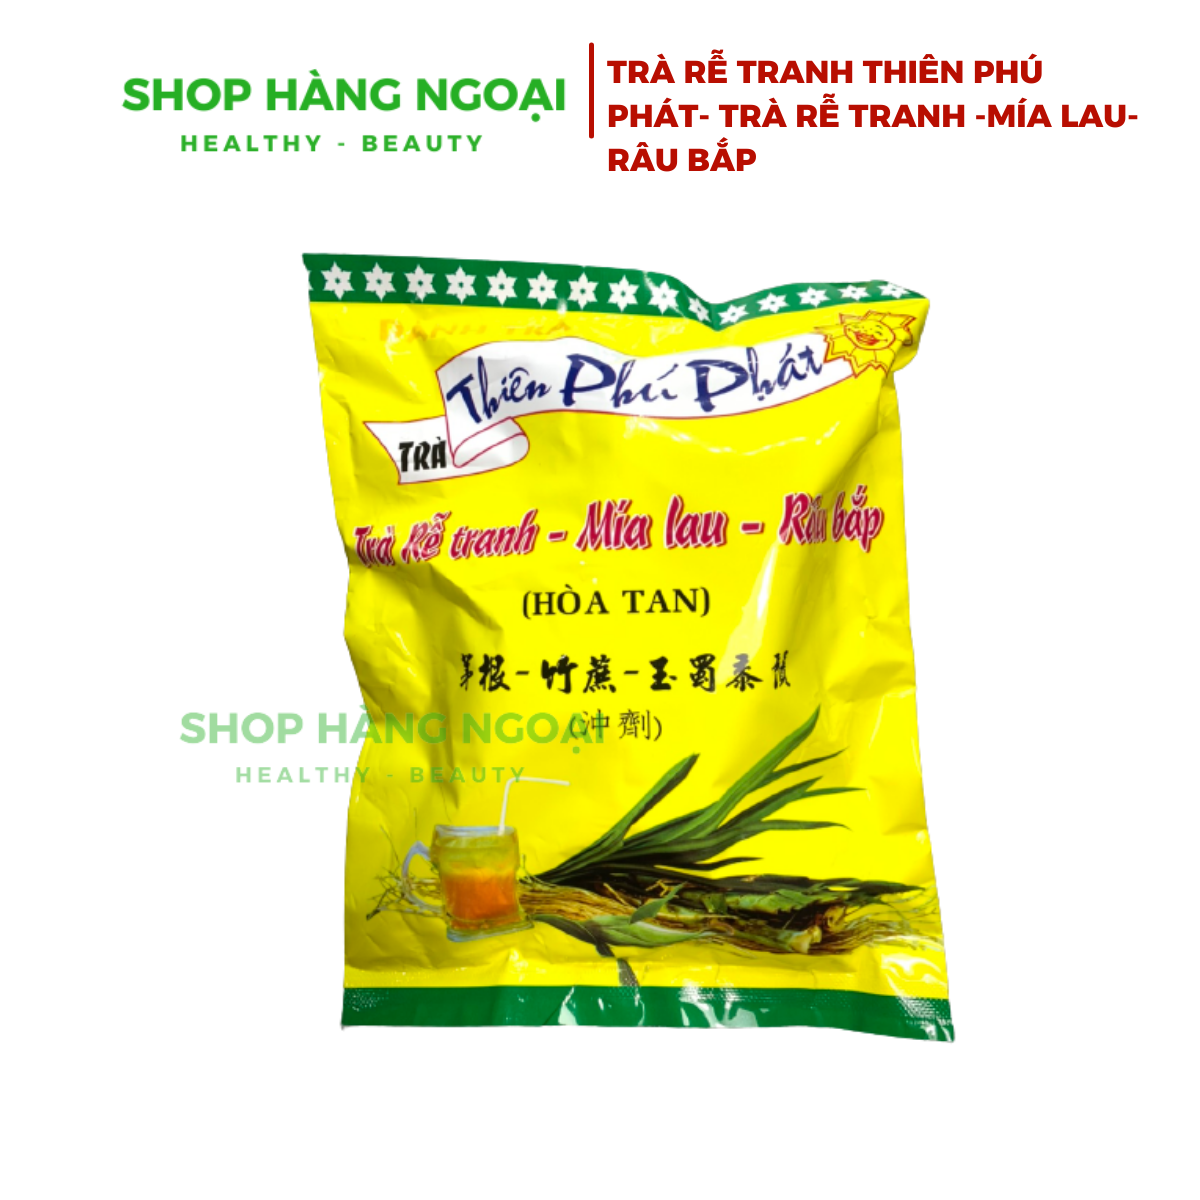 Trà rễ tranh, mía lau, râu bắp trà Thiên Phú Phát